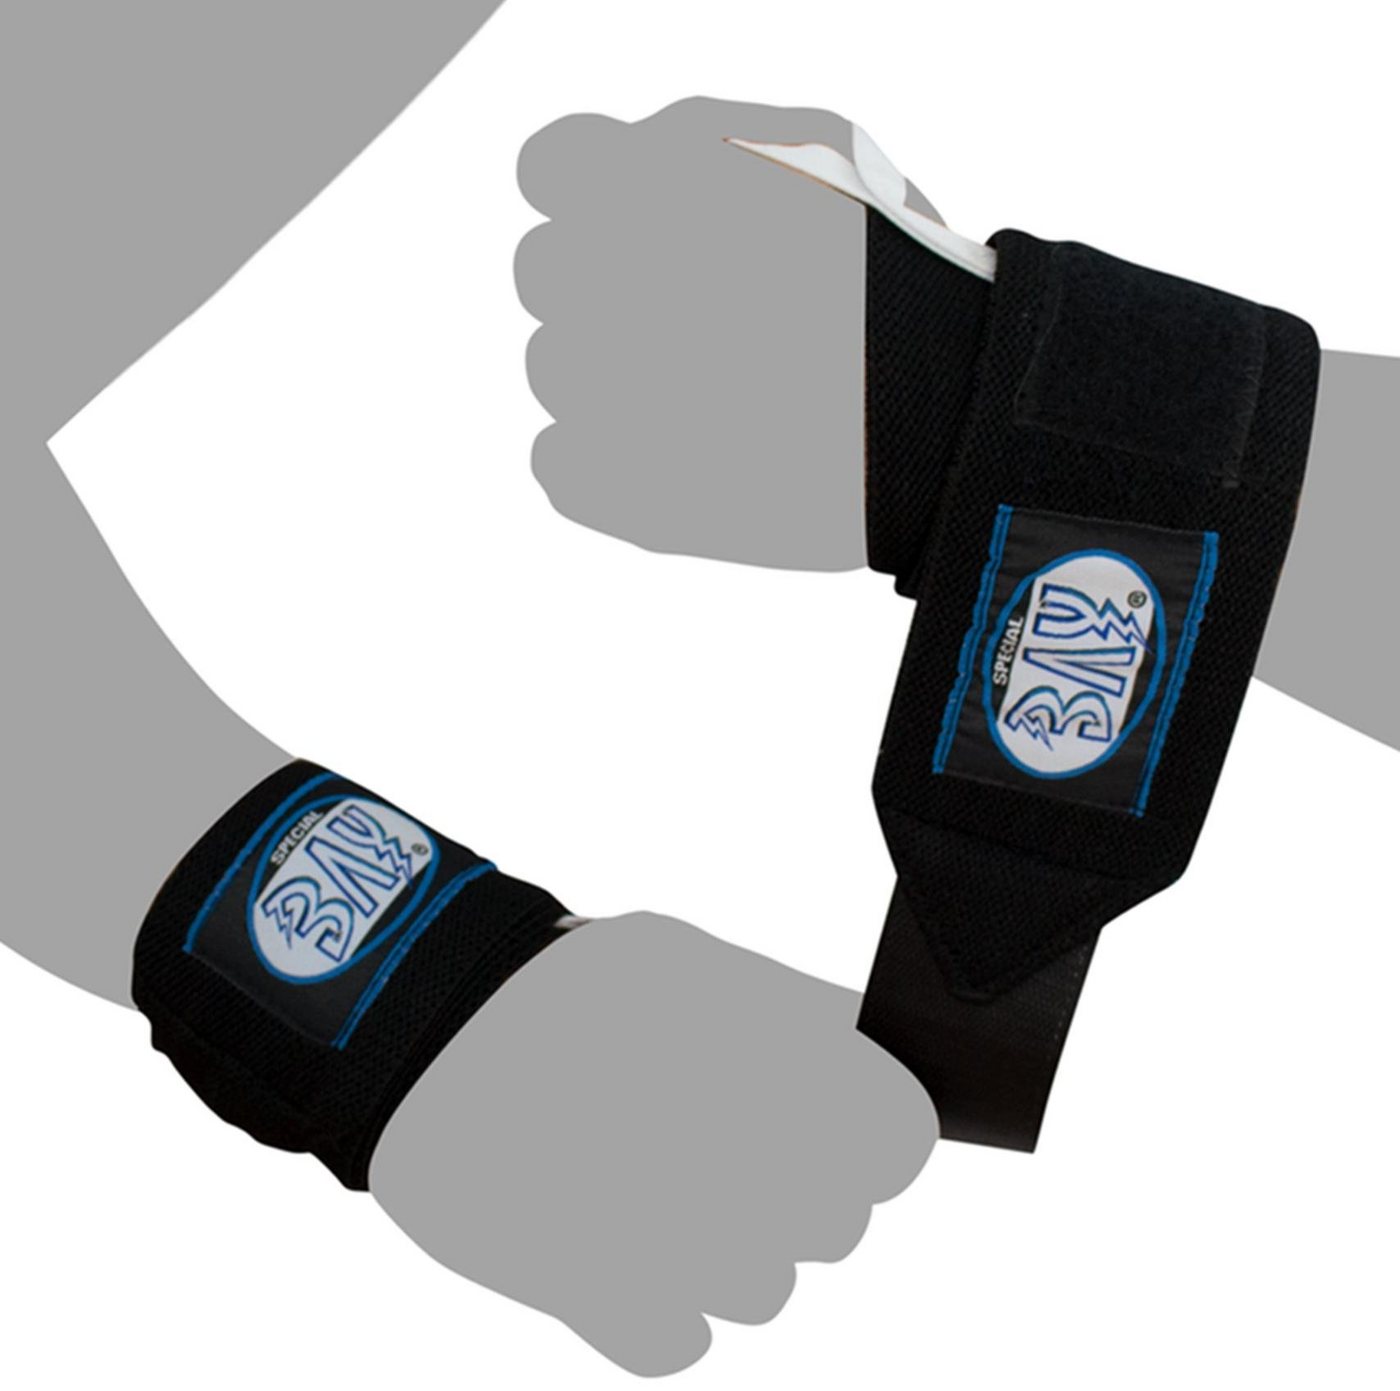 BAY-Sports Boxbandagen Wrist Wraps 65 cm Handbandagen Gewichtheben von BAY-Sports